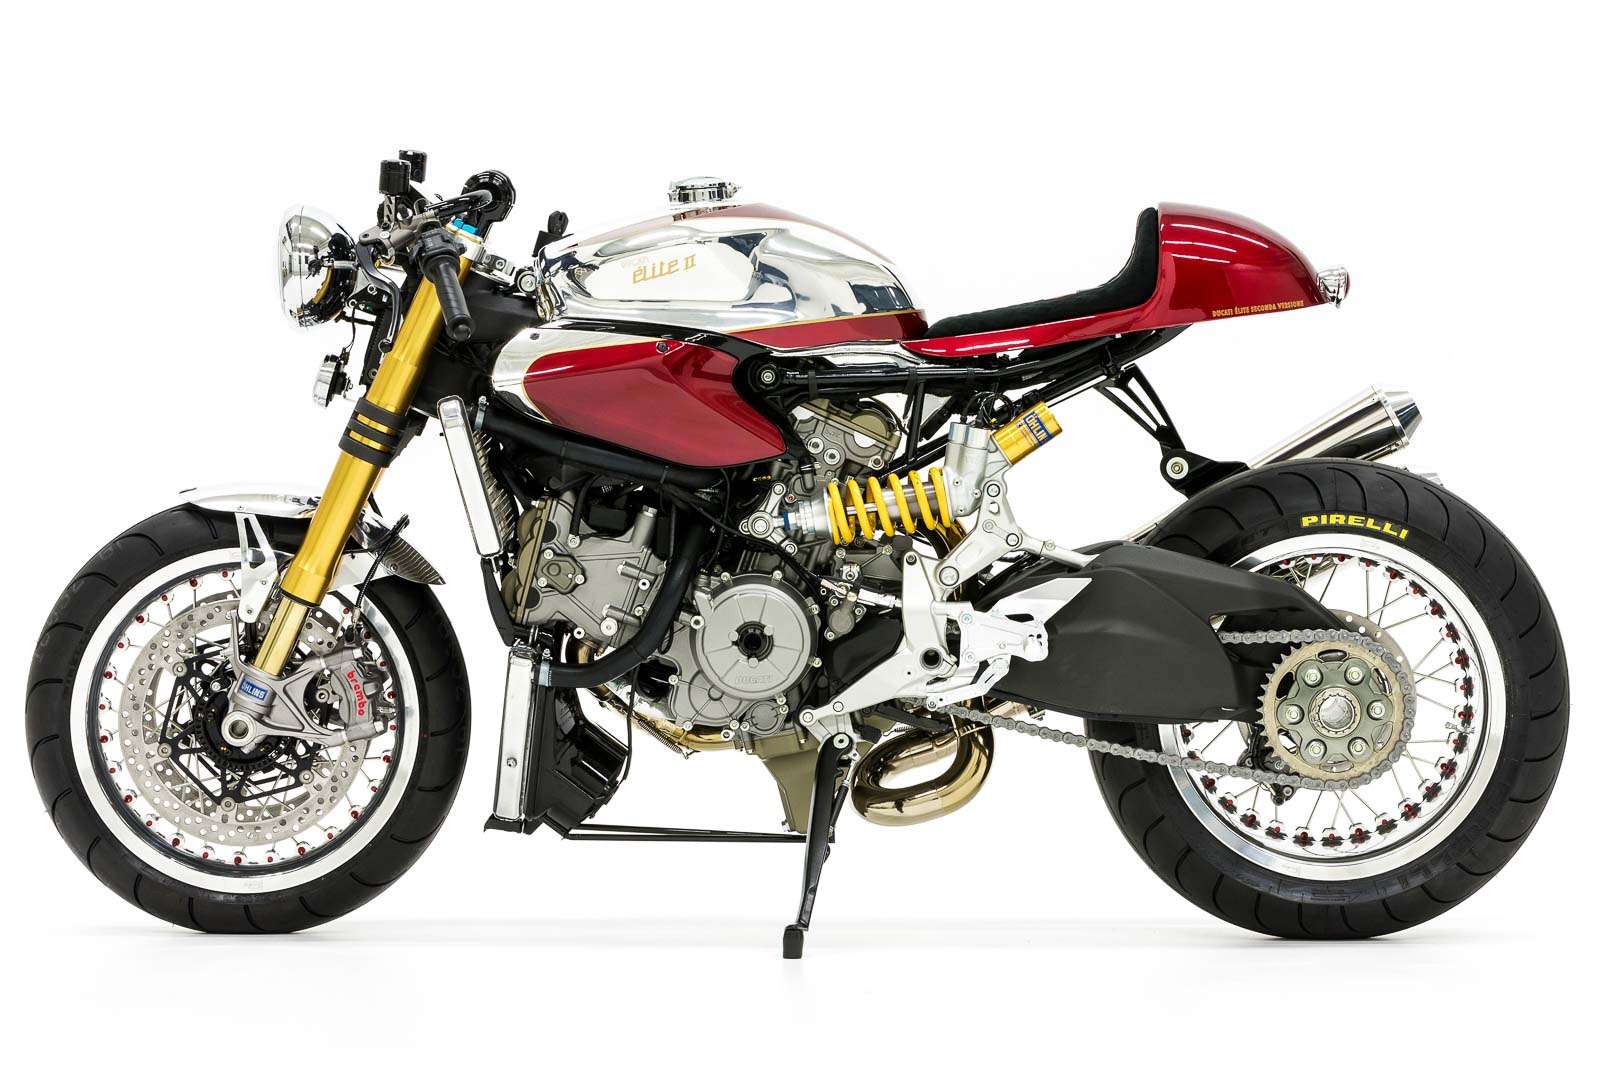 moto-puro-ducati-elite-ii-custom-sportbike-cafe-racer-motorcycle